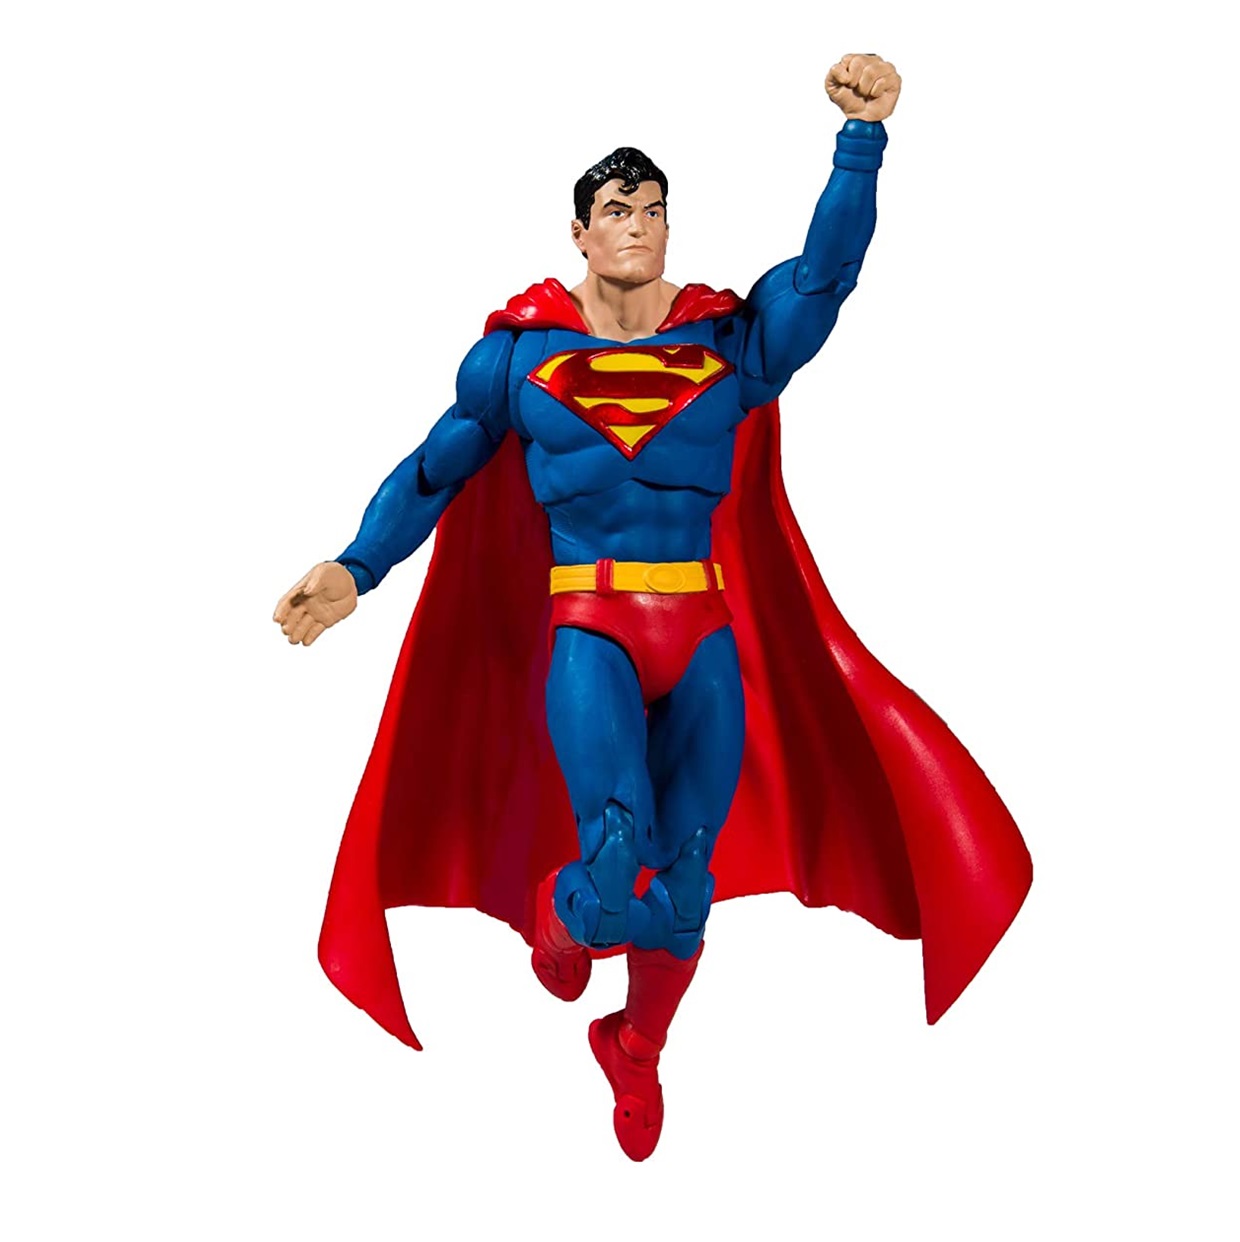 Superman Action Numero #1000 Figura Dc Multiverse Mc Farlane